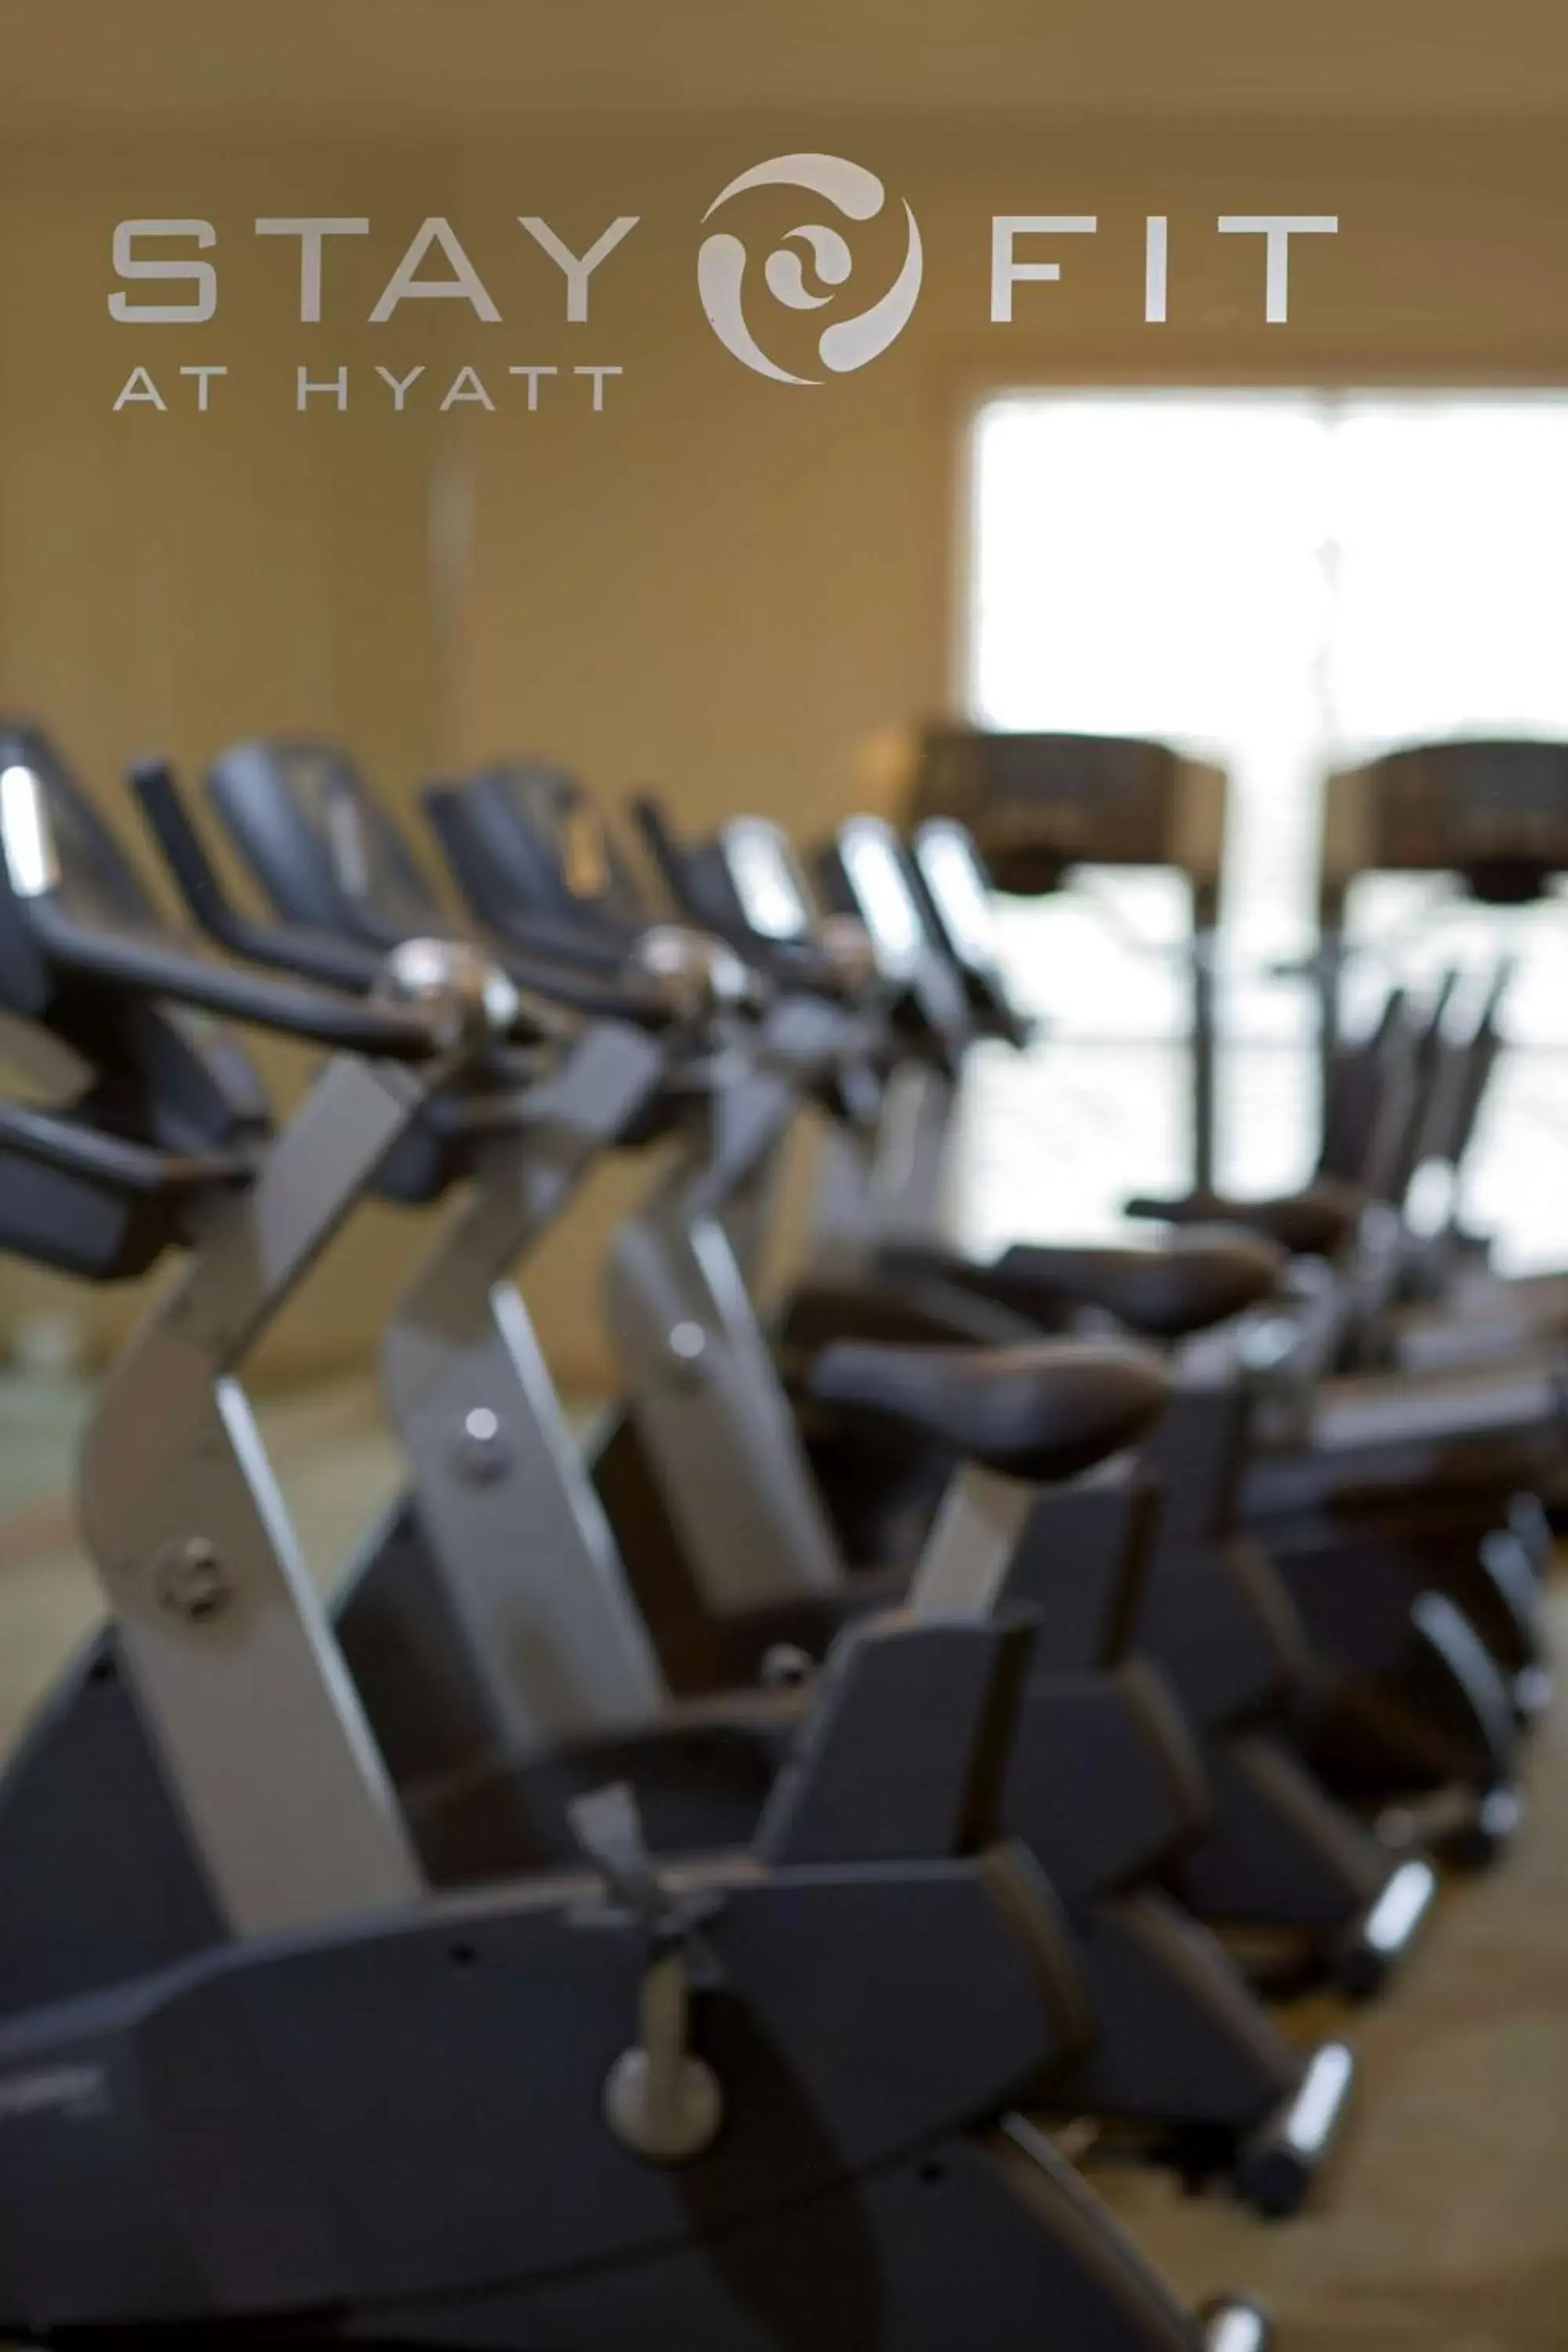 Fitness centre/facilities in Hyatt Regency Savannah